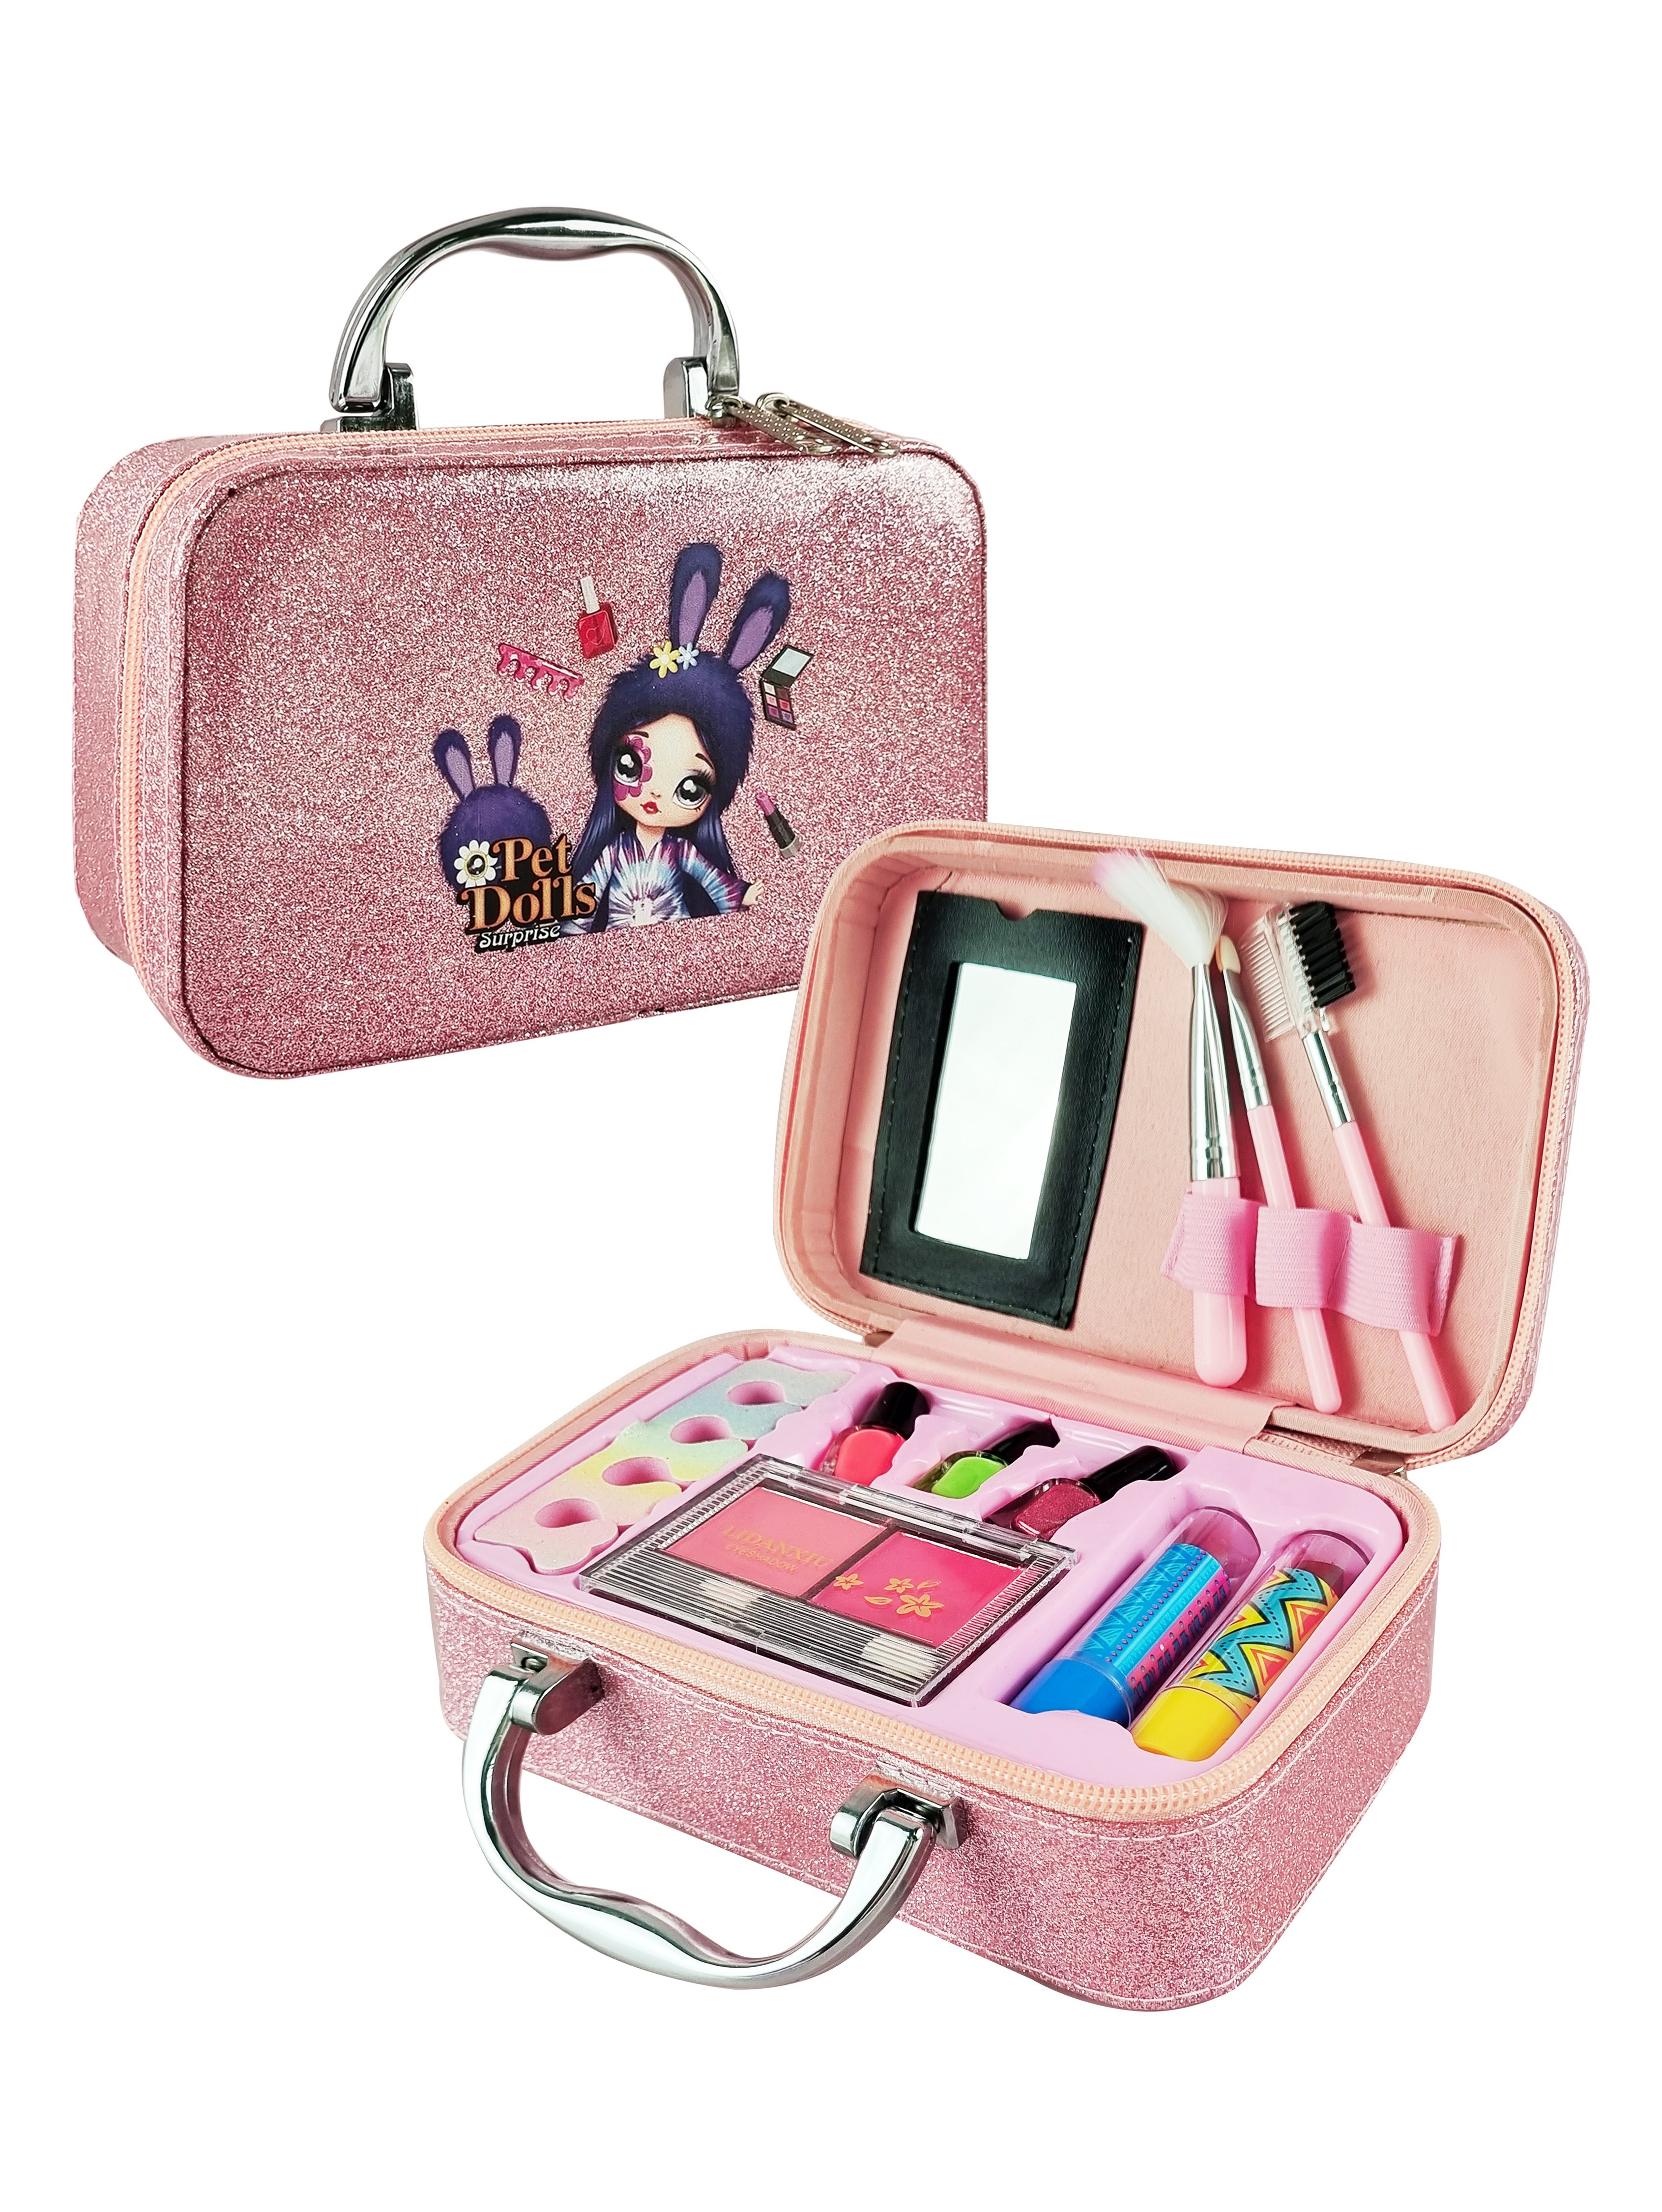 Детская декоративная косметика PetDolls, 12 предметов, розовый чемоданчик 5-905-2